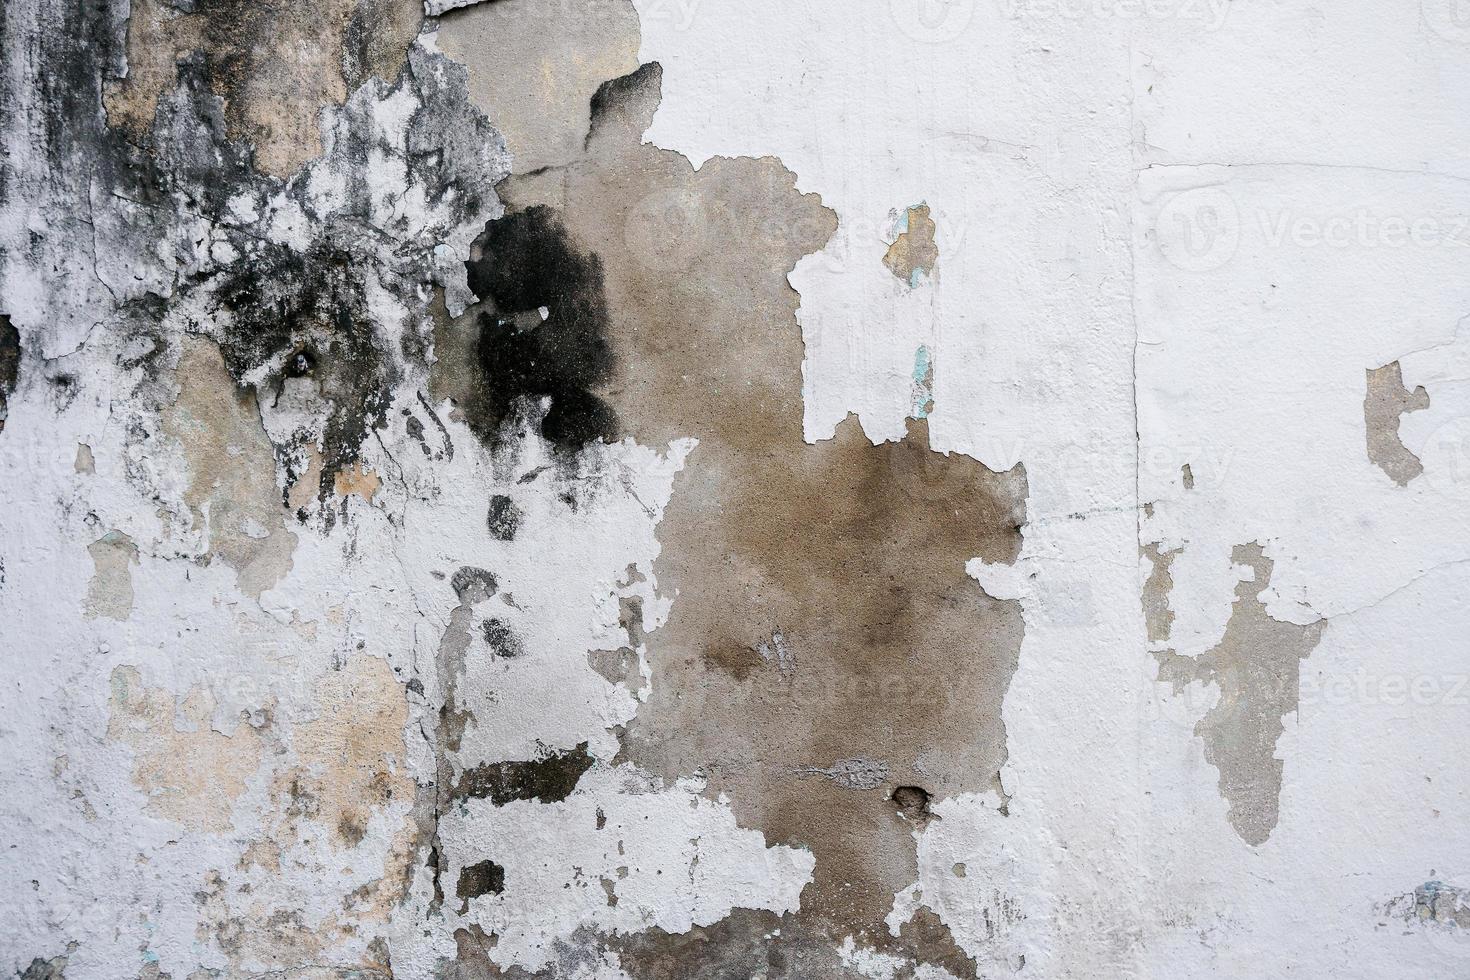 astratto grunge muri e sfondi vecchio cemento muri con nero macchie su il superficie causato di umidità.peeling parete superficie con crepe e graffi, vecchio ruvido grigio cemento parete superficie foto